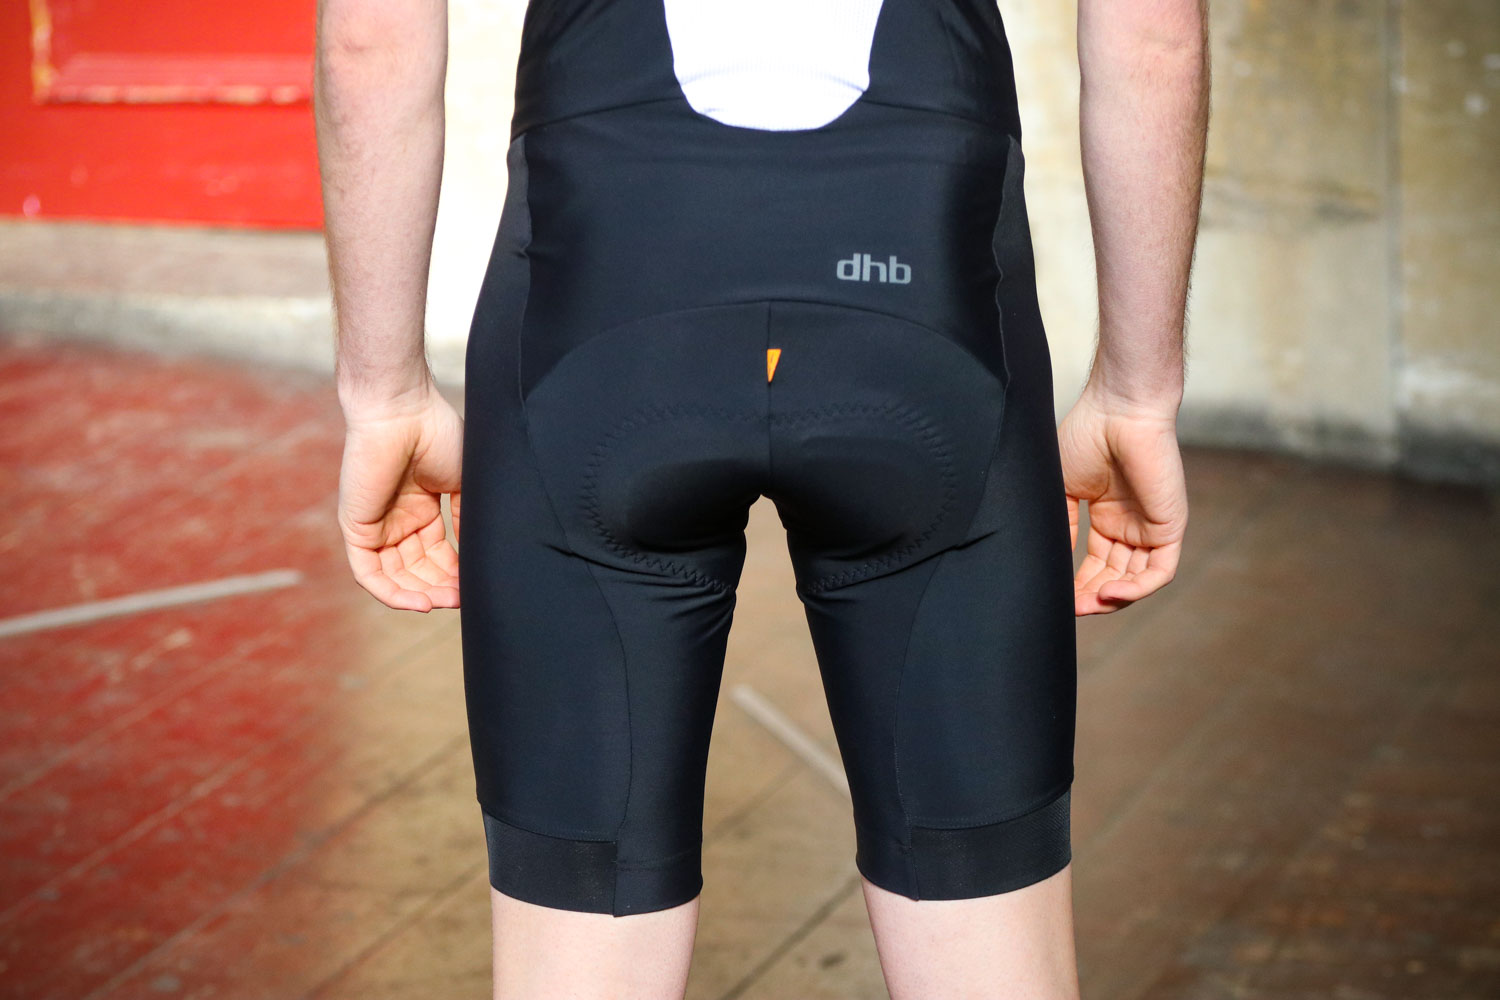 Review: dhb Aeron bib shorts | road.cc